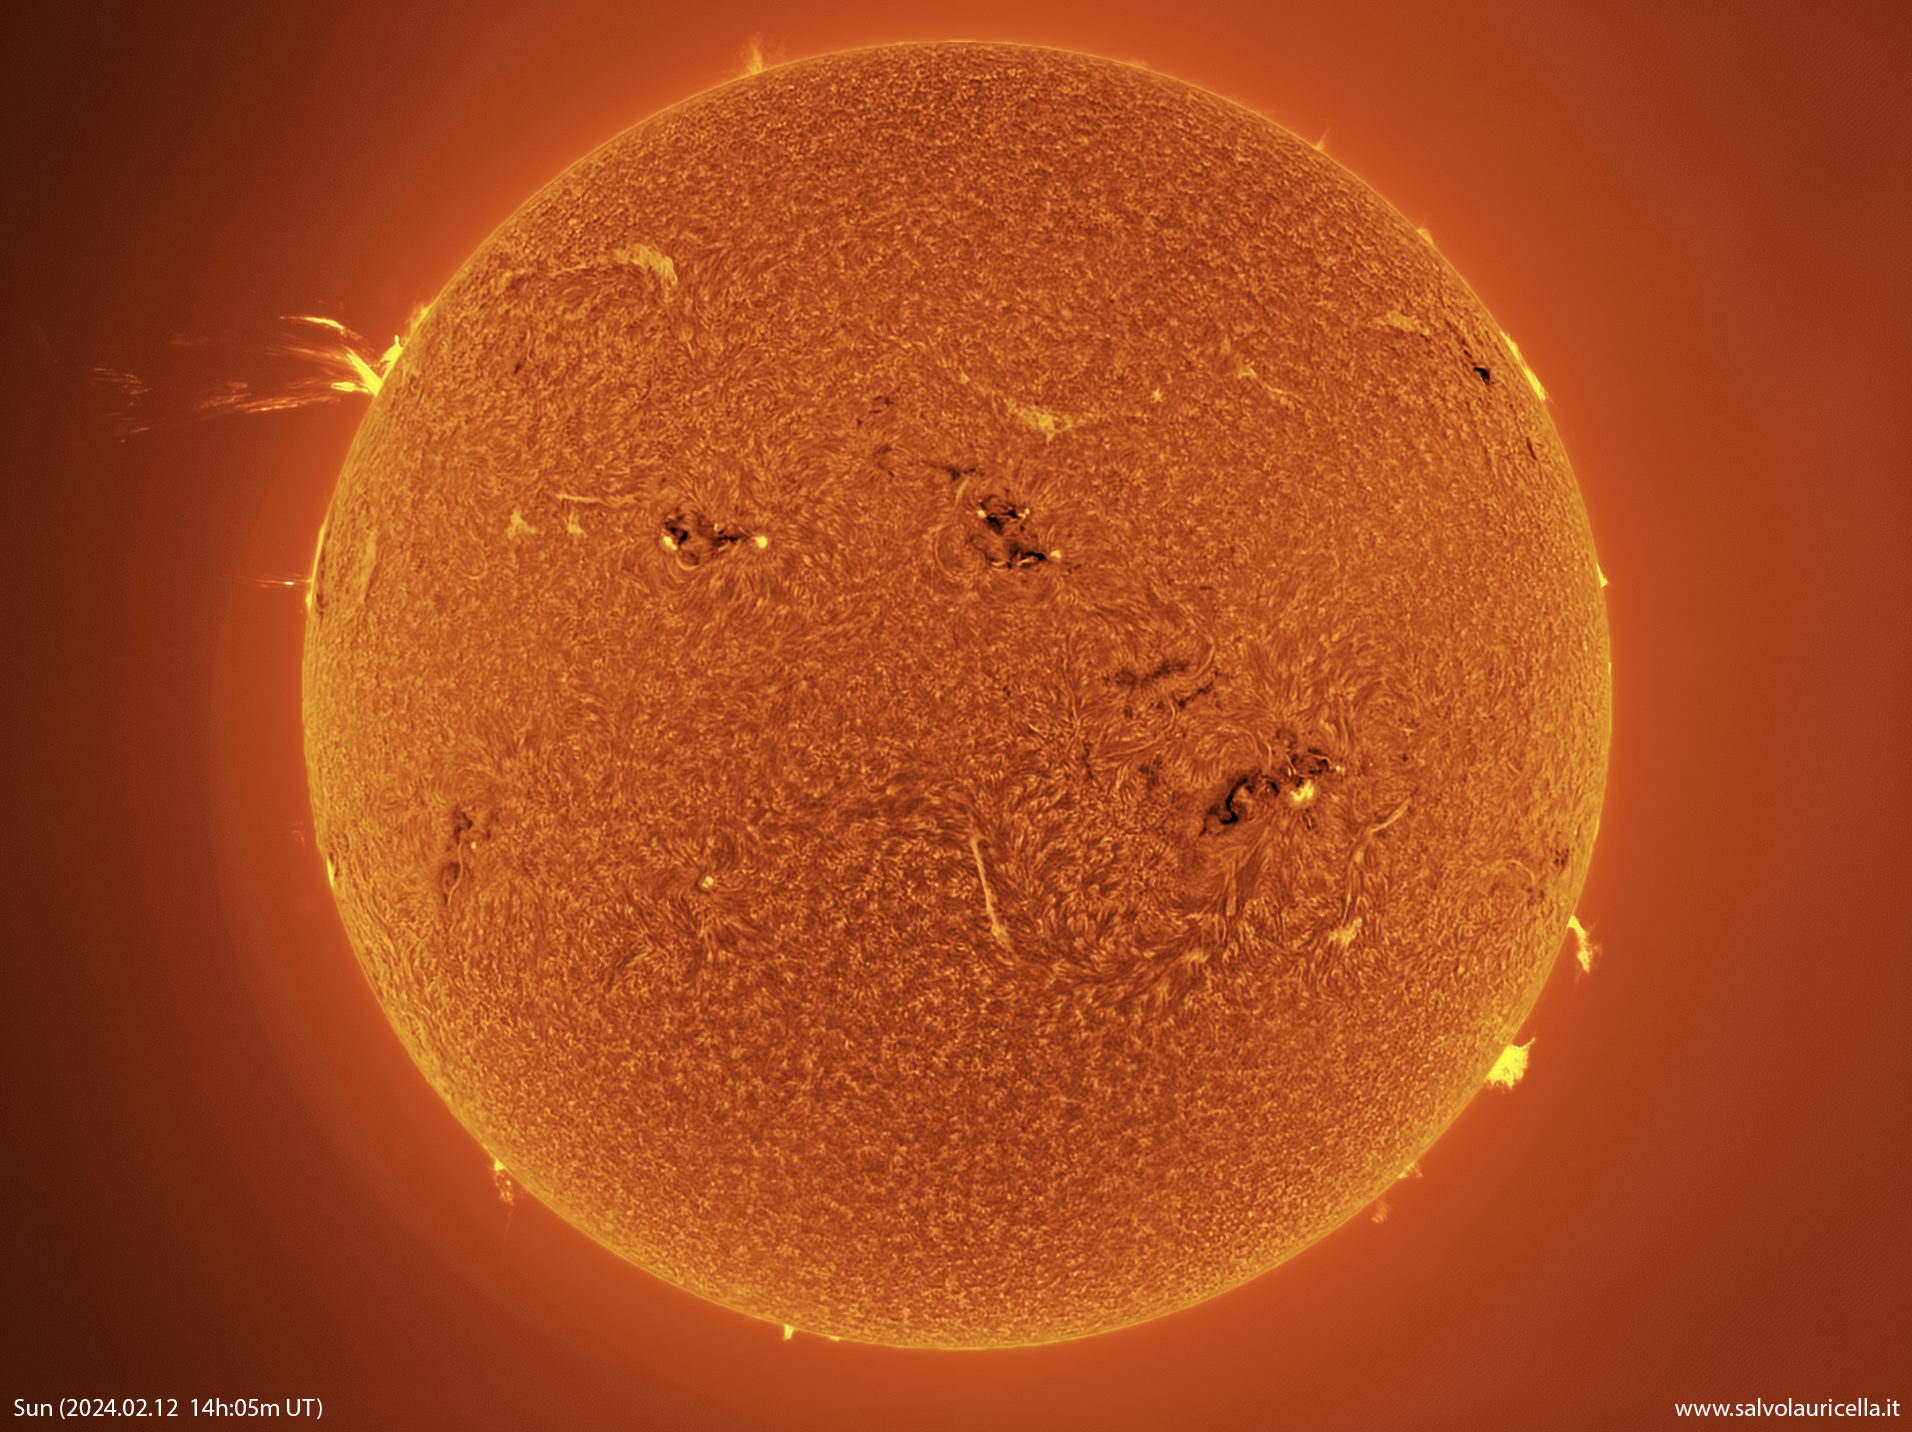 Spectacular prominence on the Sun